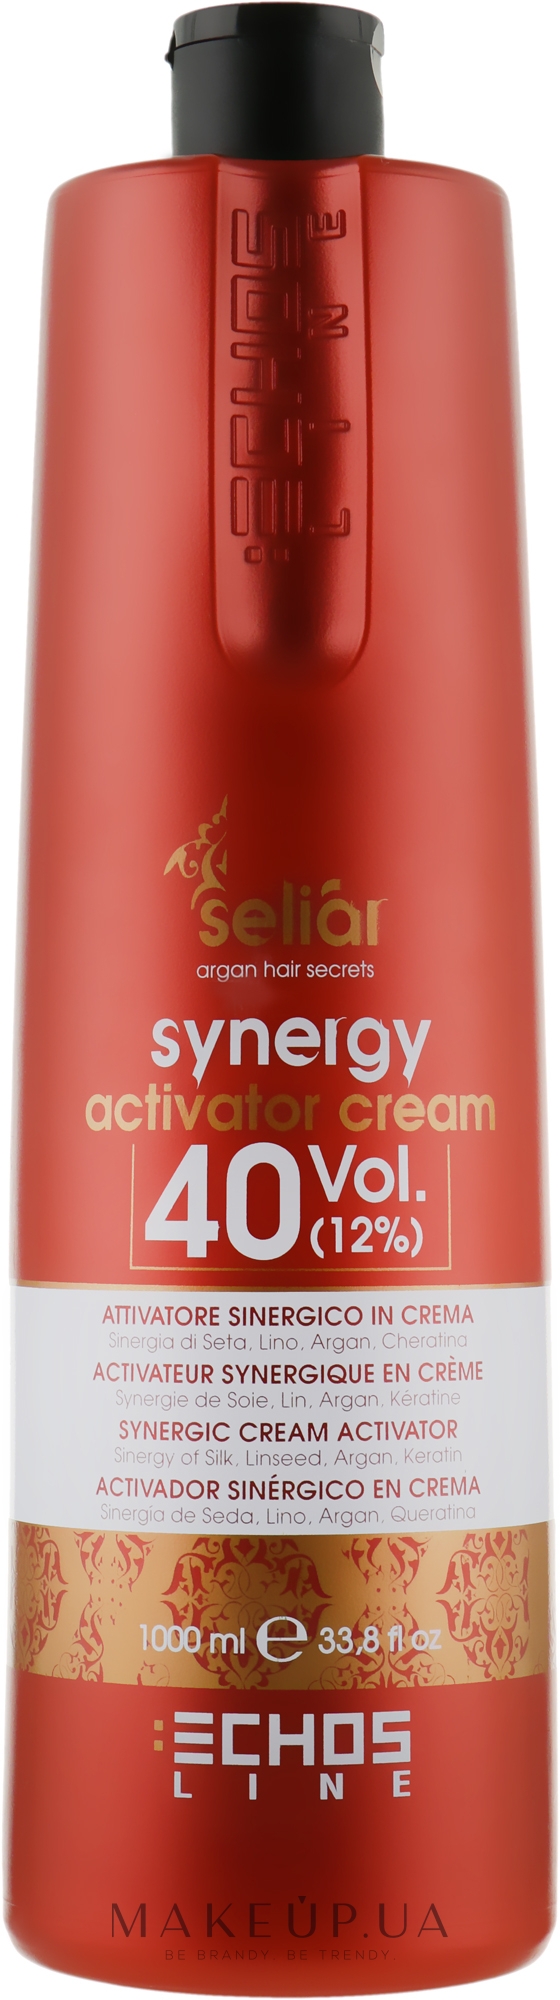 Крем-активатор - Echosline Seliar Synergic Cream Activator 40 vol (12%) — фото 1000ml